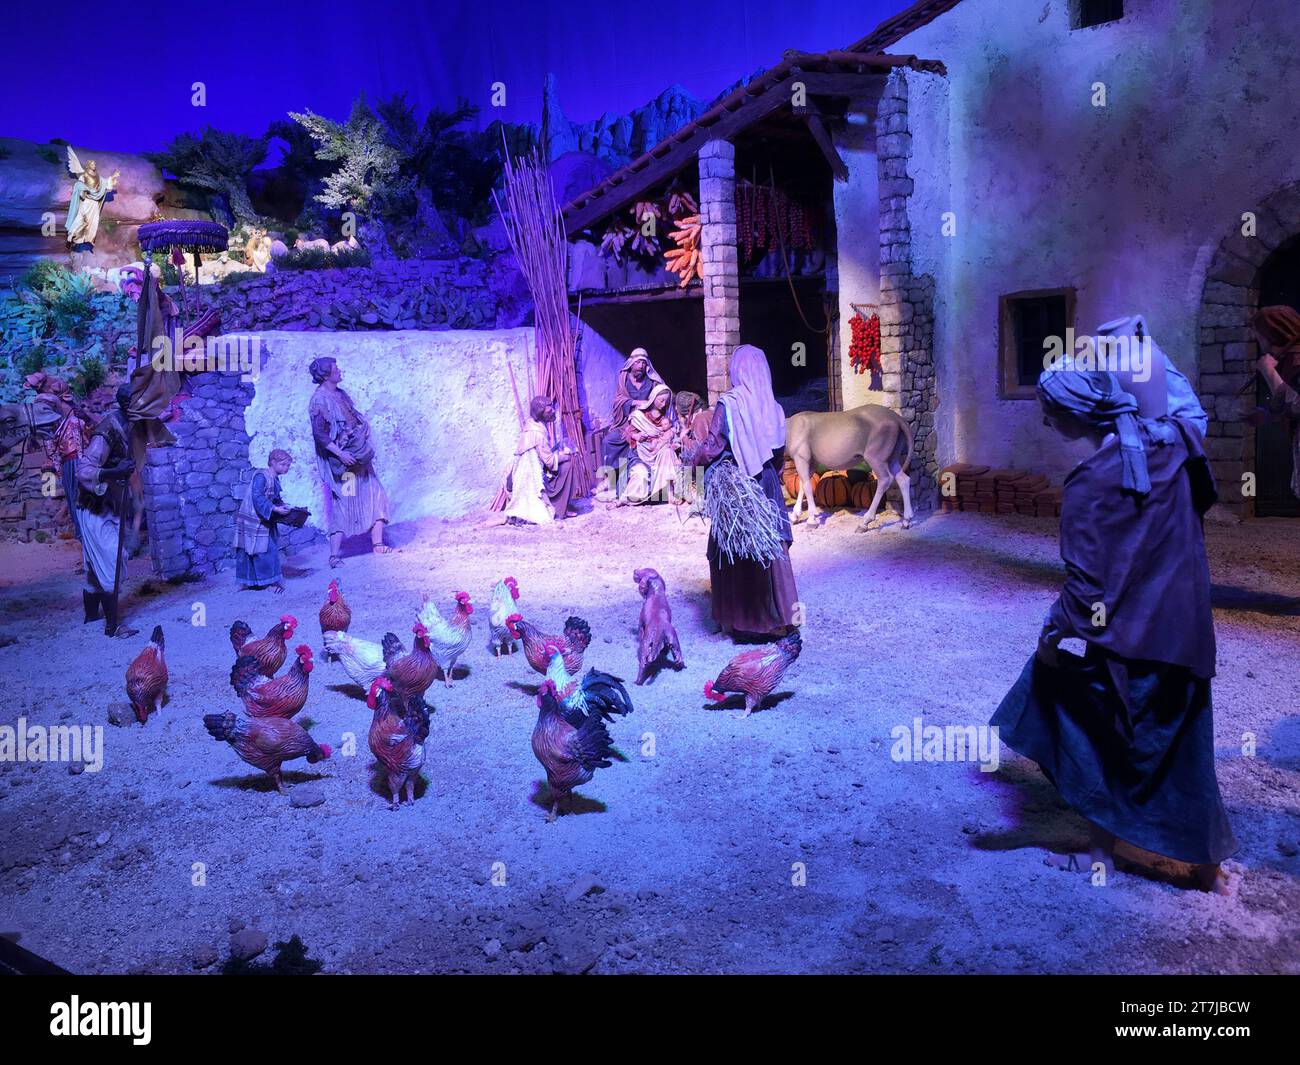 Presepe artigianale: Figure fatte a mano di Gesù, Maria e Giuseppe catturano gli spettatori in questa riverente rappresentazione del presepe natalizio. Foto Stock